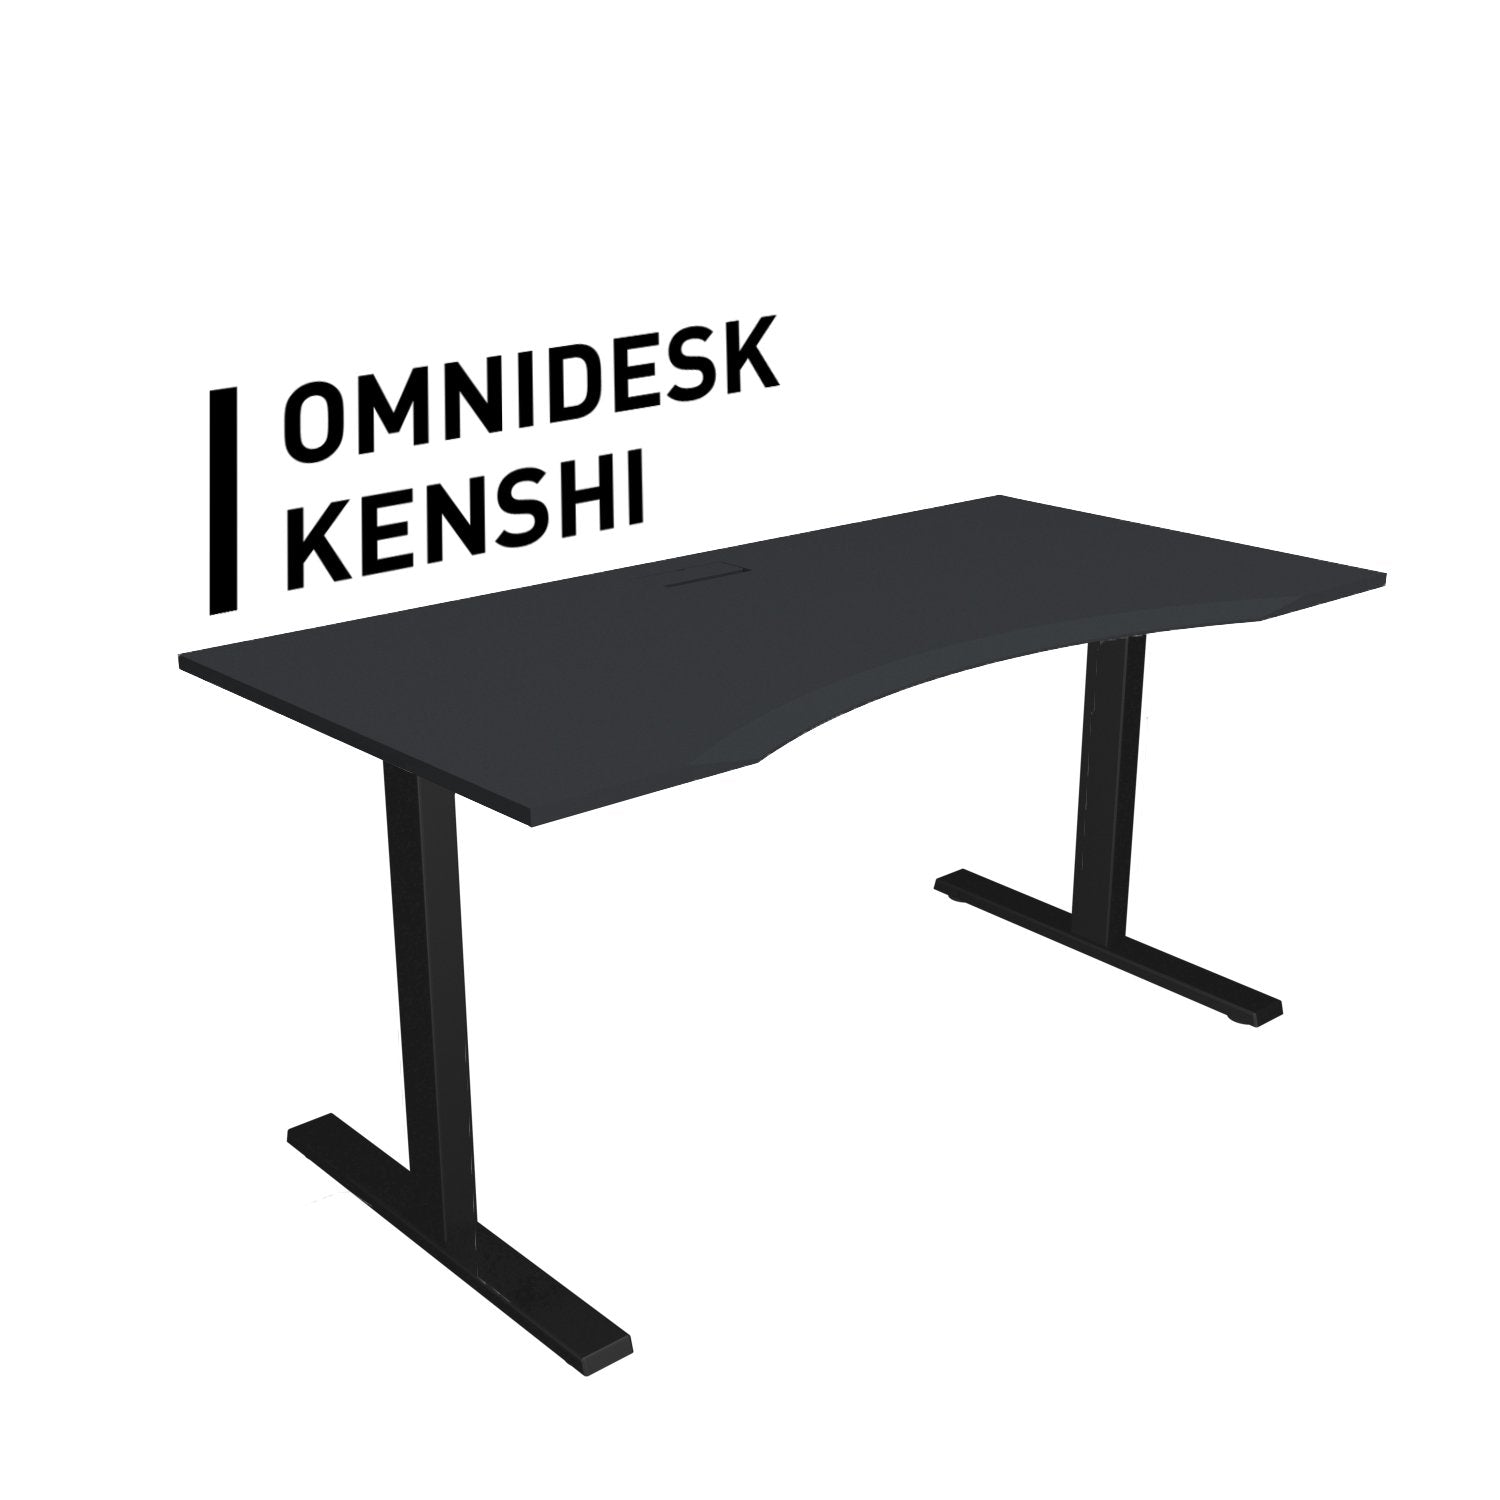 Omnidesk Kenshi